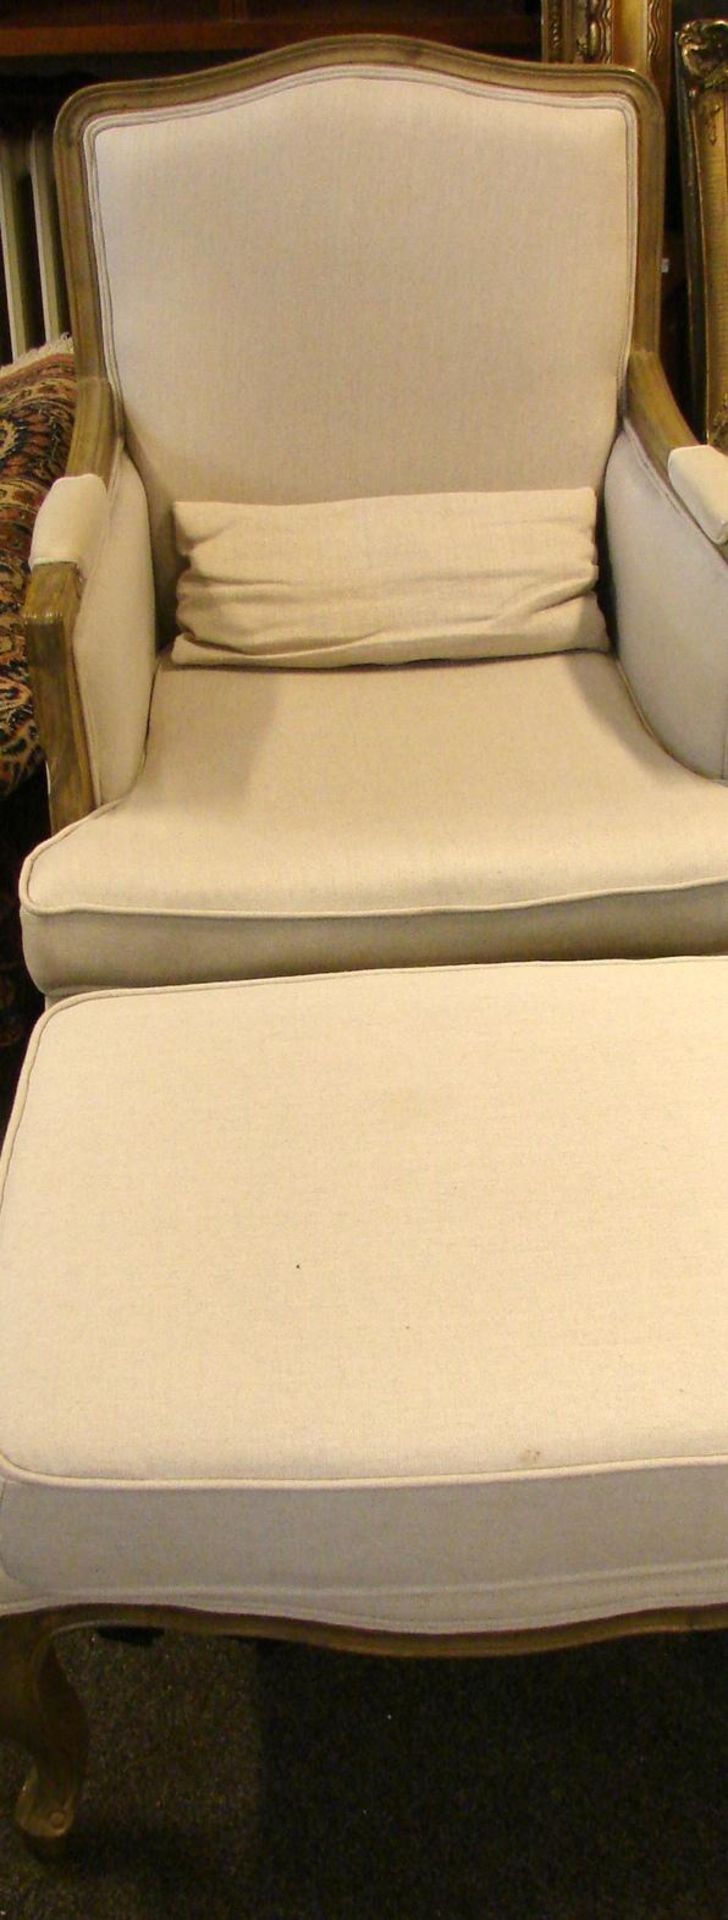 Sessel mit Fusshocker, Holzrahmen, beigefarbender Bezug, Zustand gut, neuzeitlich